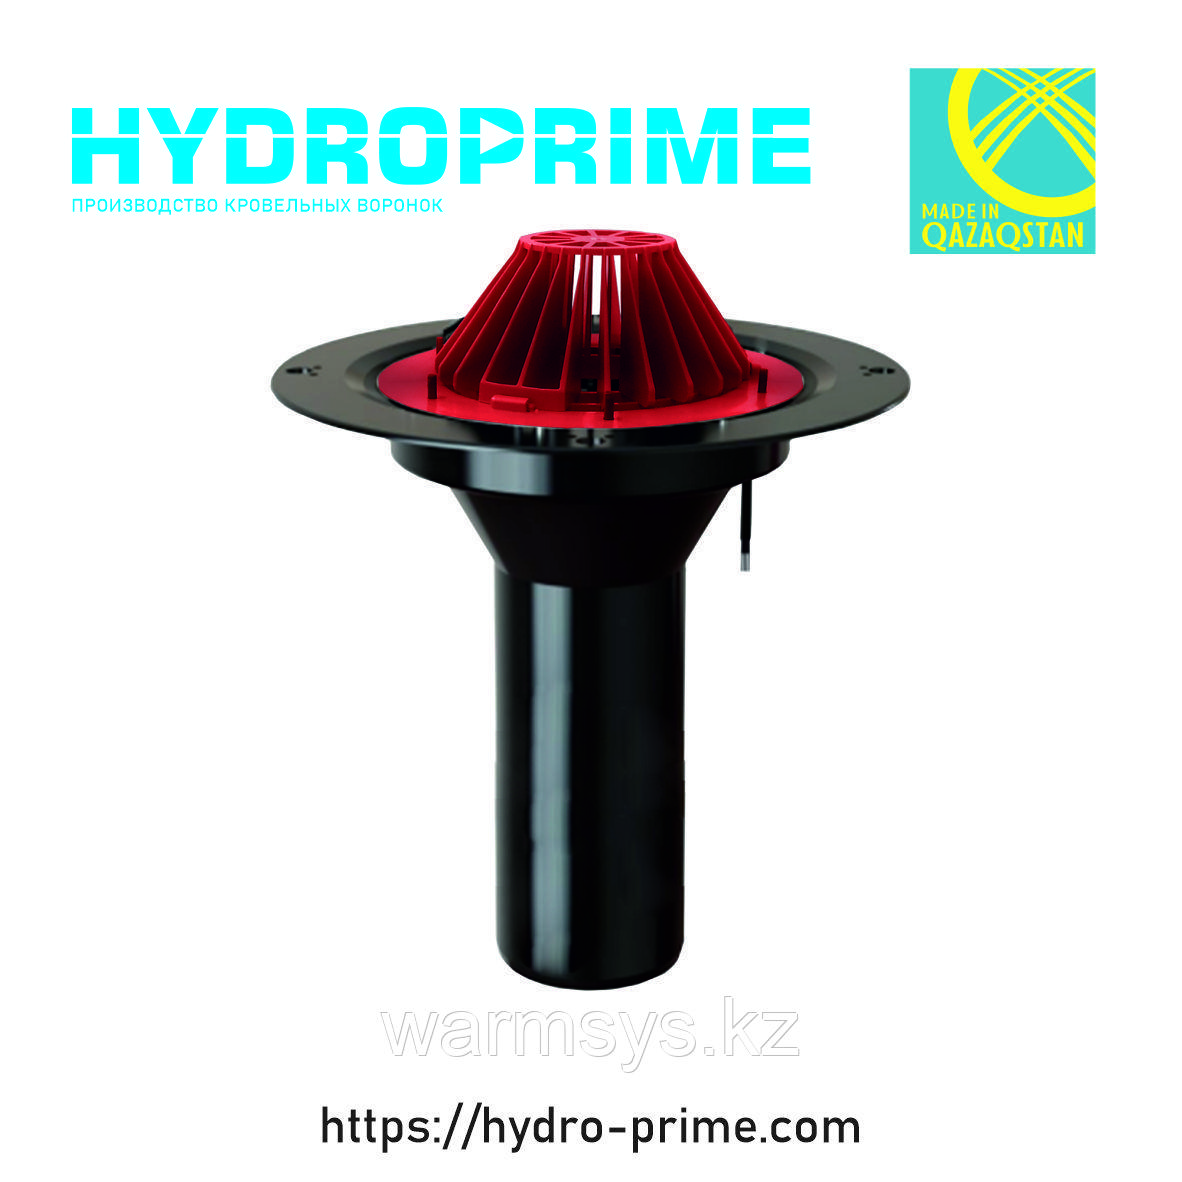 Кровельная воронка HydroPrime HPH 110x720 с электрообогревом